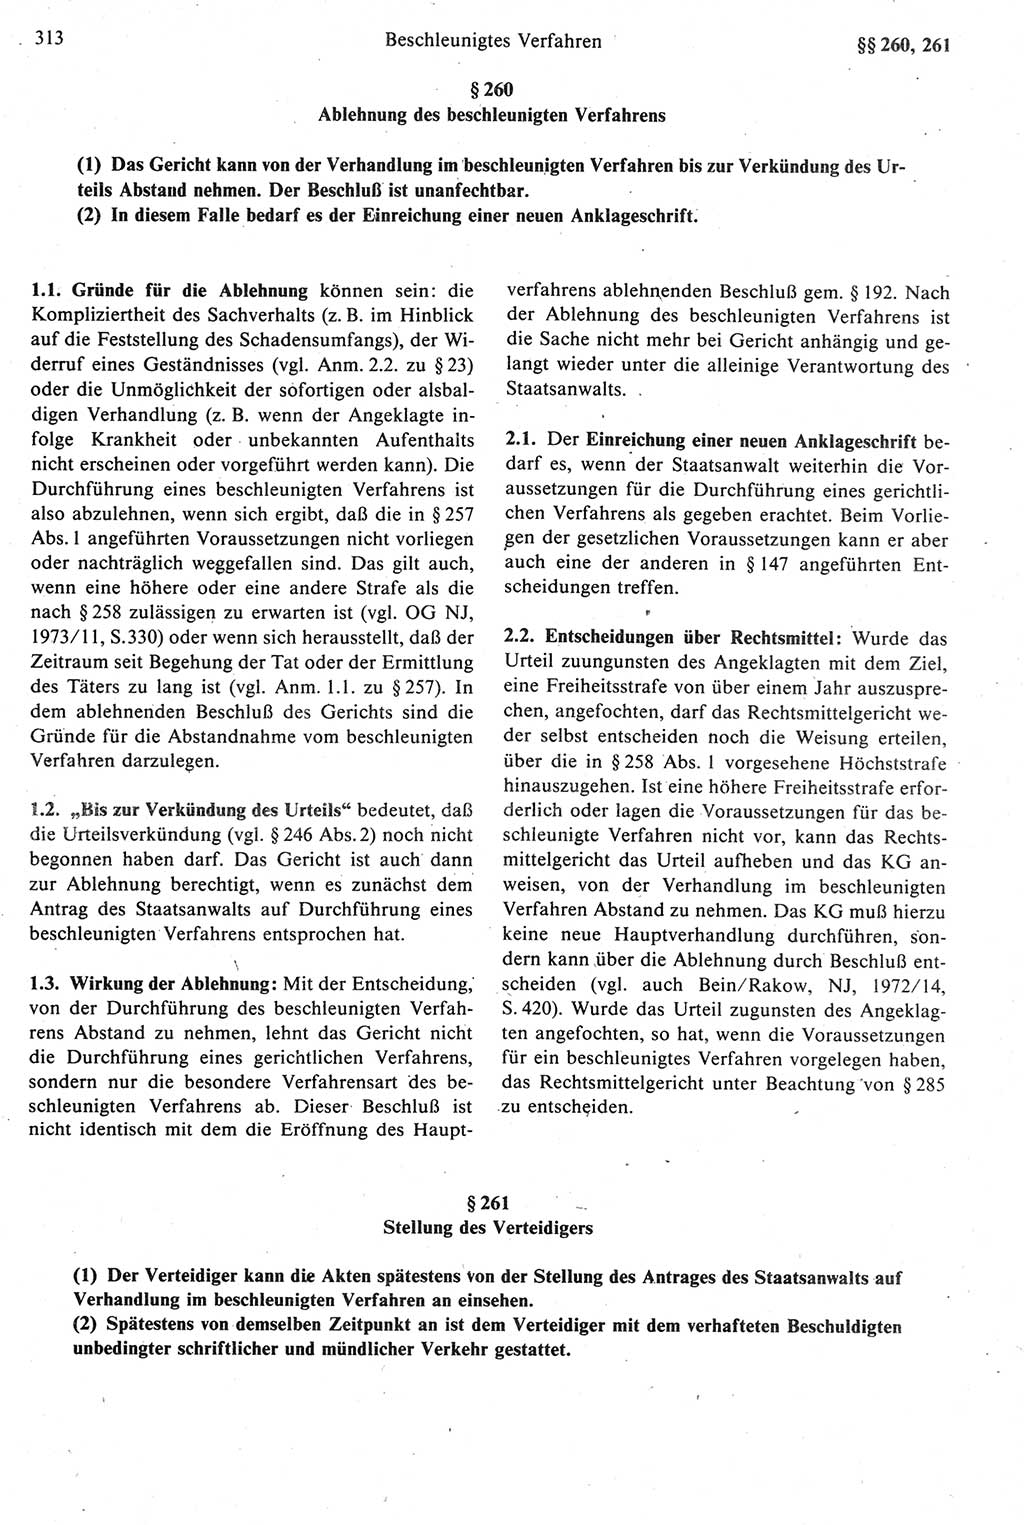 Strafprozeßrecht der DDR [Deutsche Demokratische Republik], Kommentar zur Strafprozeßordnung (StPO) 1987, Seite 313 (Strafprozeßr. DDR Komm. StPO 1987, S. 313)